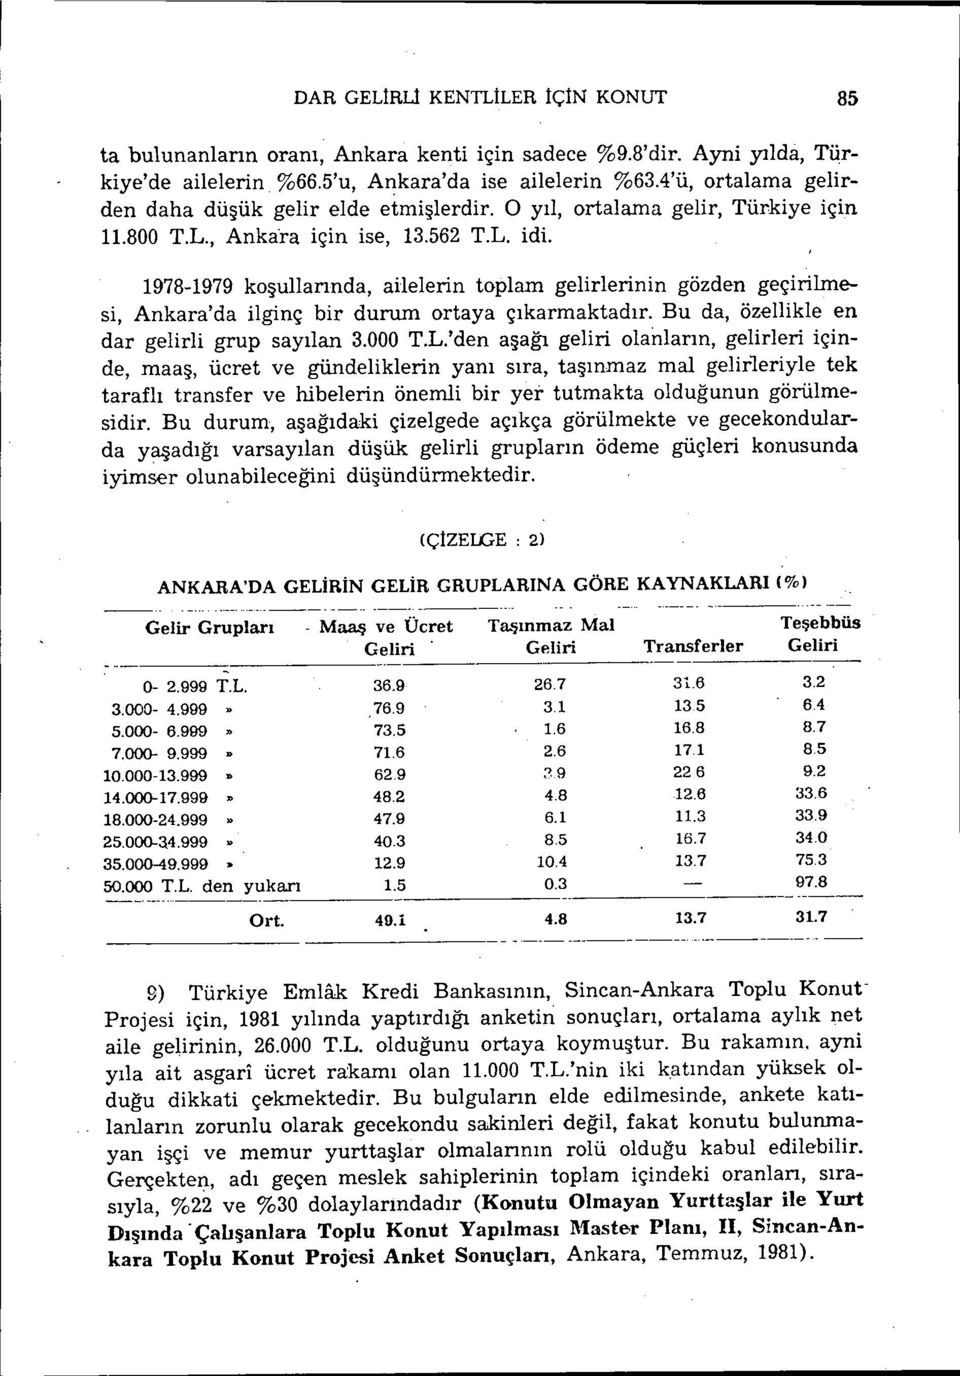 1978-1979koşullarında, ailelerin toplam gelirlerinin gözden geçirilmesi, Ankara'da ilginç bir durum ortaya çıkarmaktadır. Bu da, özellikle en dar gelirli grup sayılan 3.000 T.L.